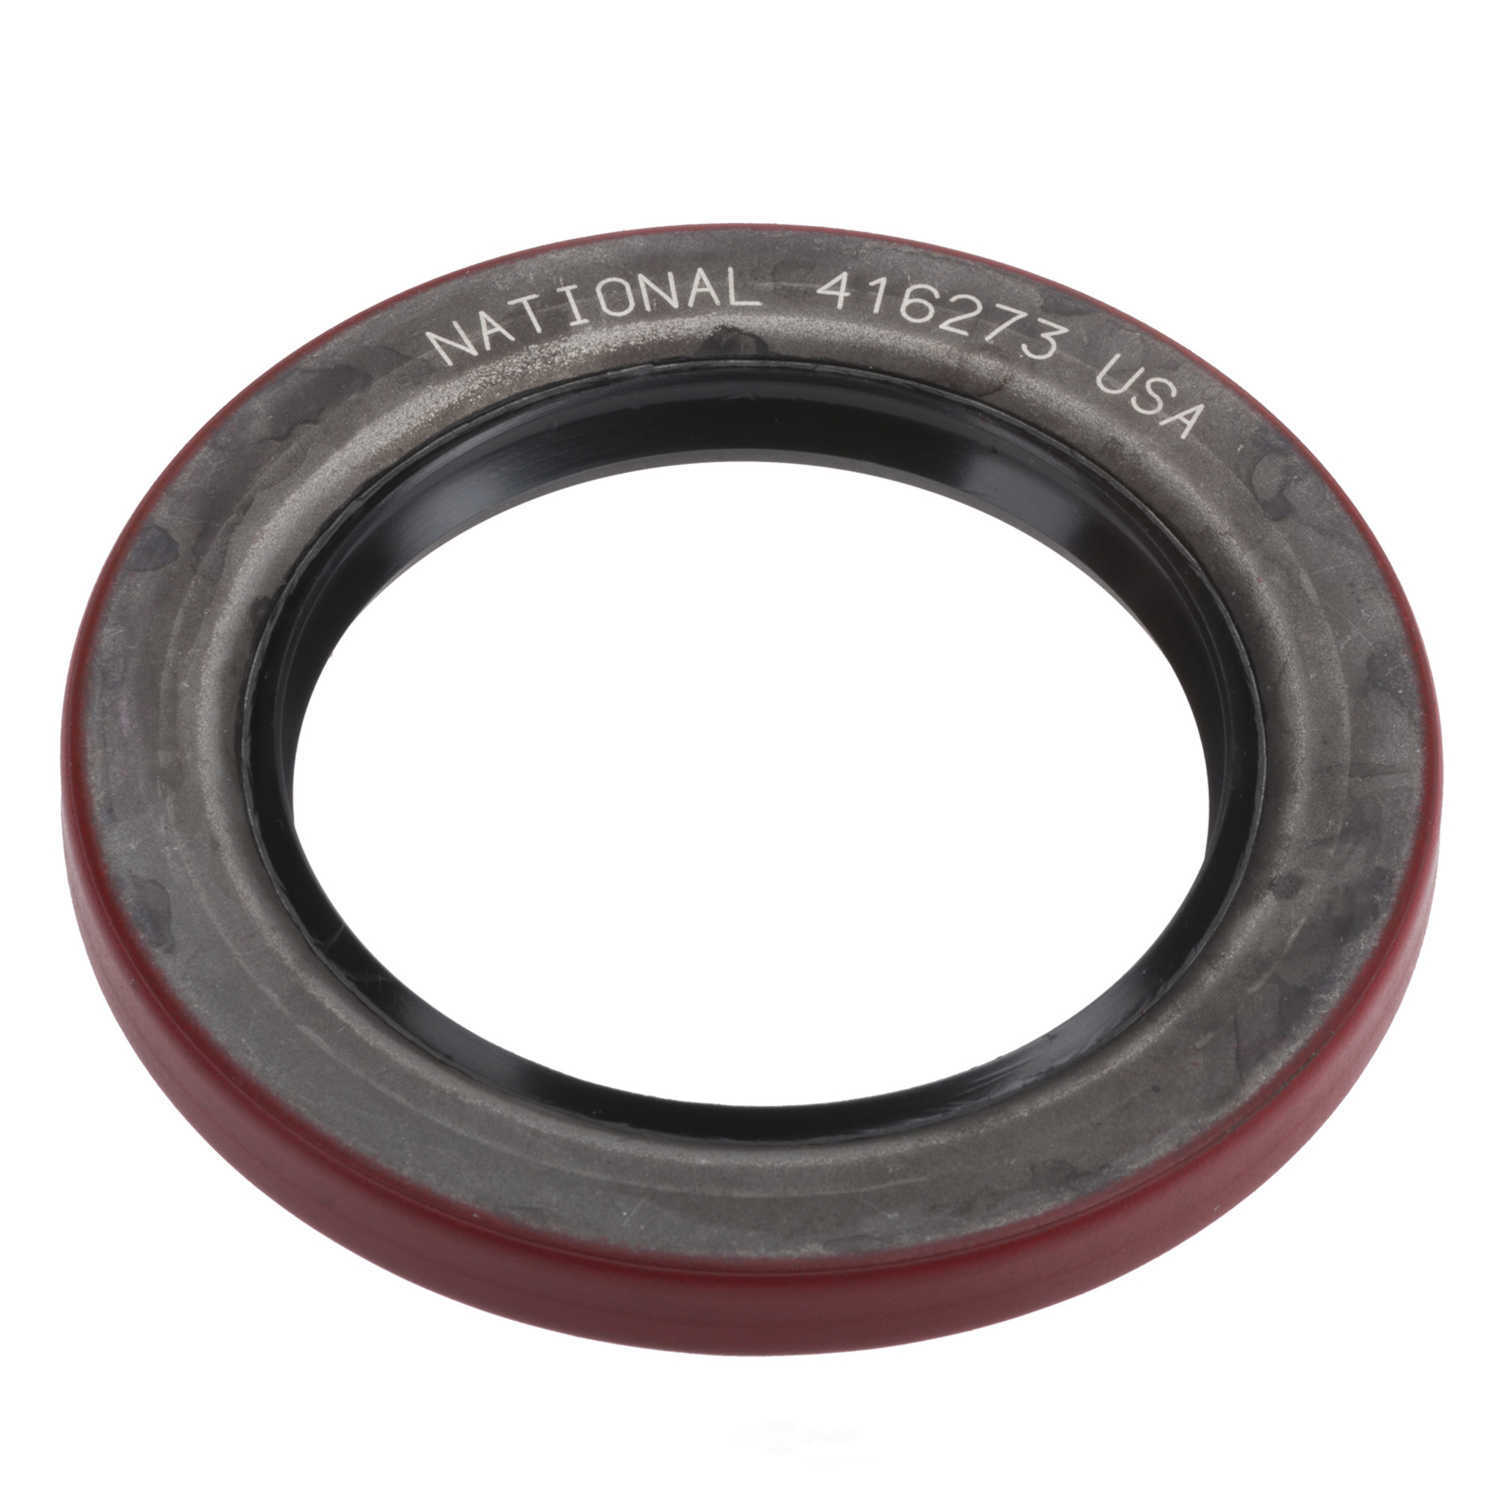 NATIONAL SEAL/BEARING - Wheel Seal - BCA 416273